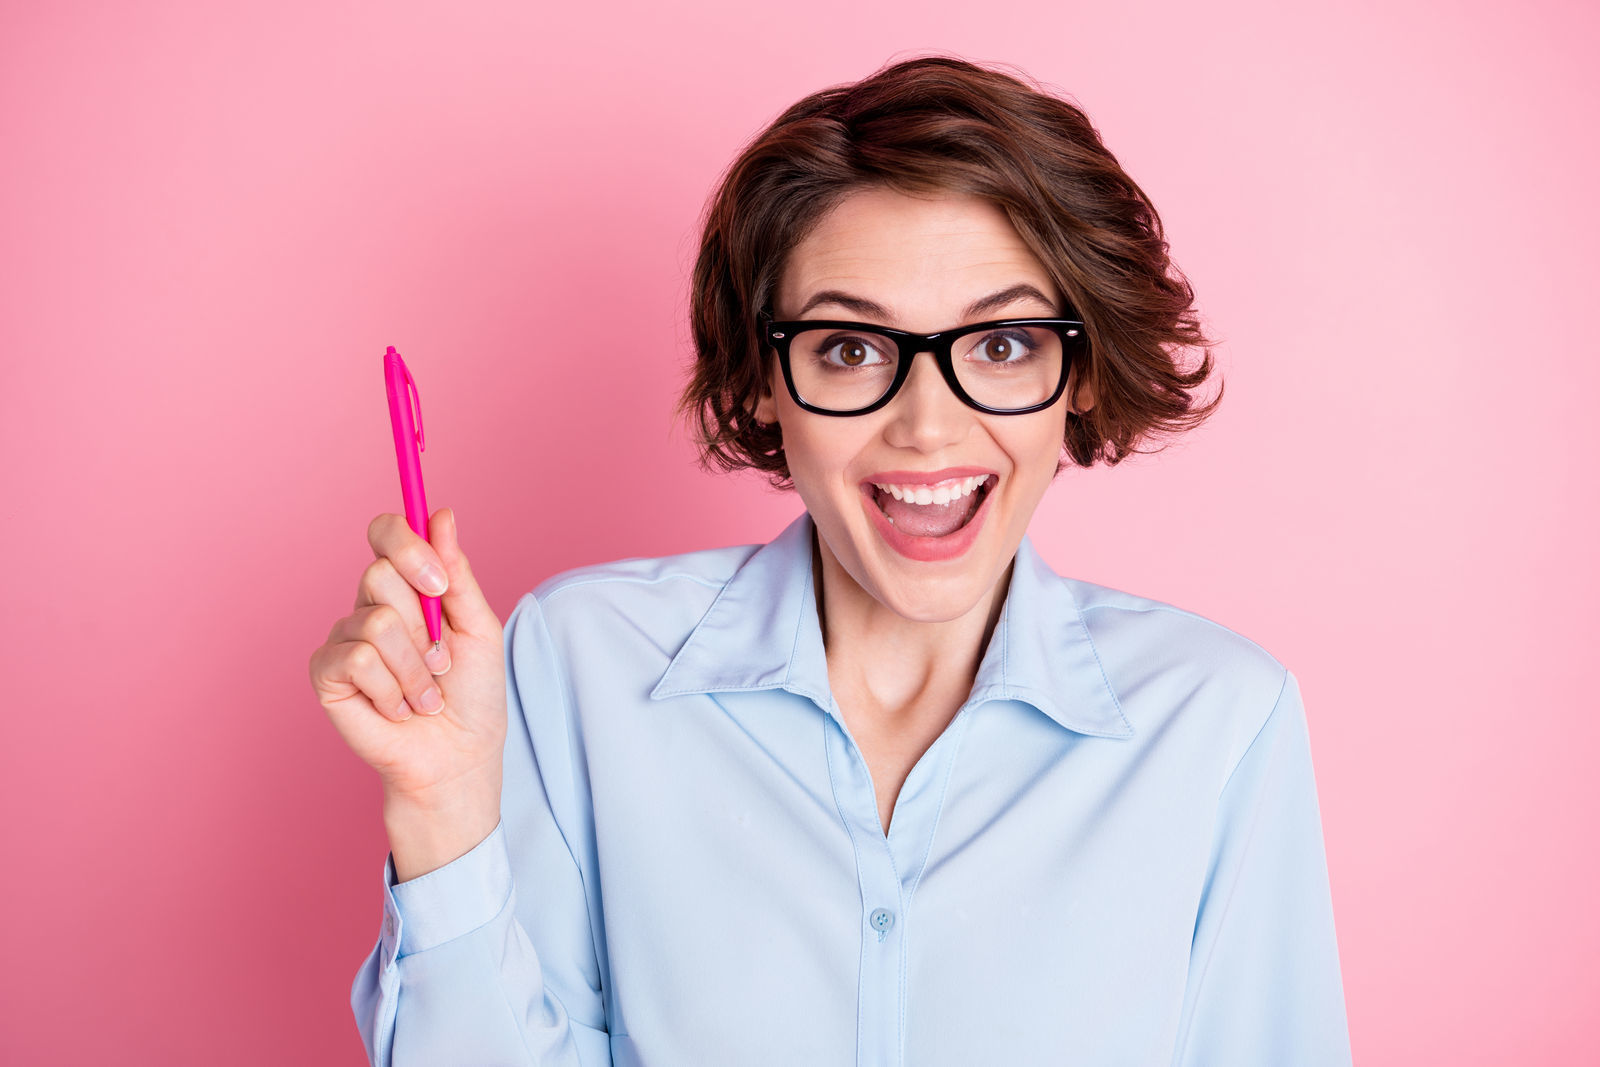 девушка в черных очках с короткой стрижкой в голубой рубашке широко улыбается и держит в руках розовую ручку стоит на фоне розой стены